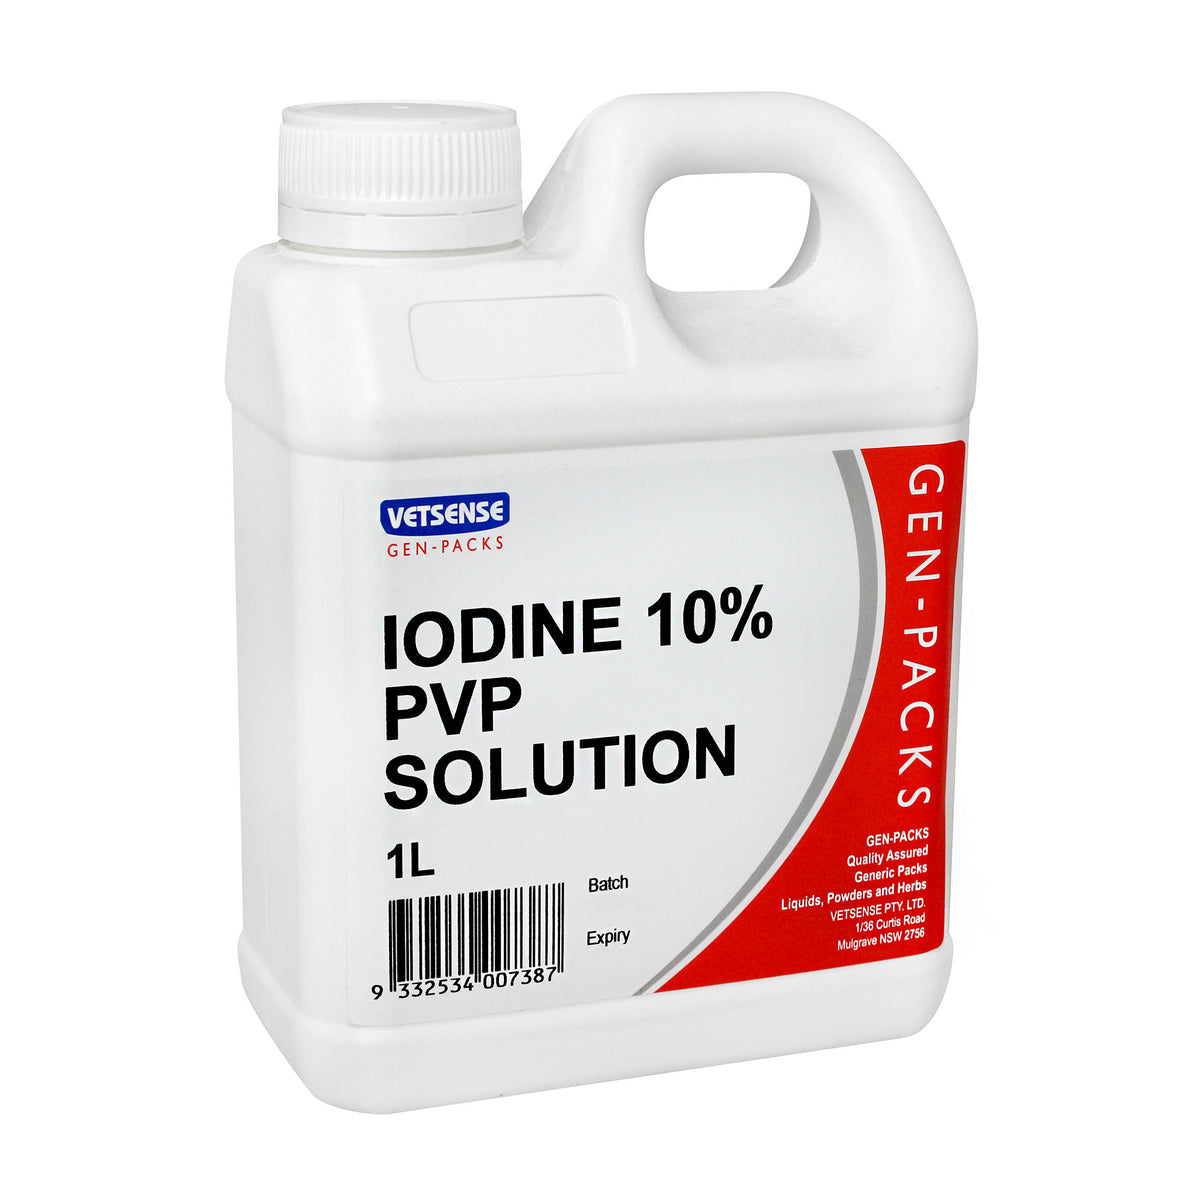 Vetsense Gen Packs Iodine 10% PVP Solution